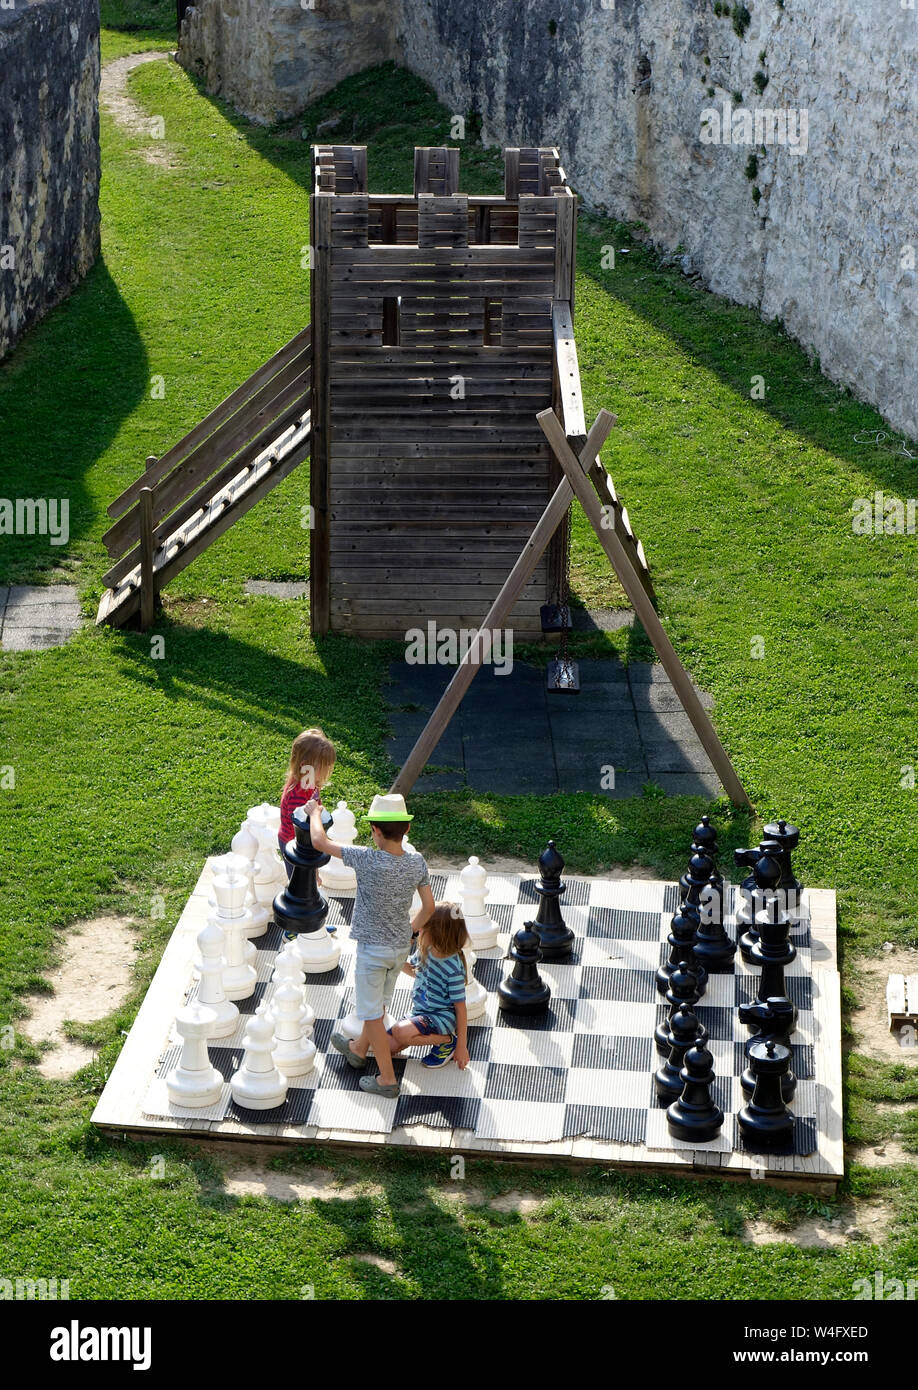 Les enfants jouent aux échecs en public avec grand jardin jeu d'échec. Celje vieux château. La Slovénie Banque D'Images